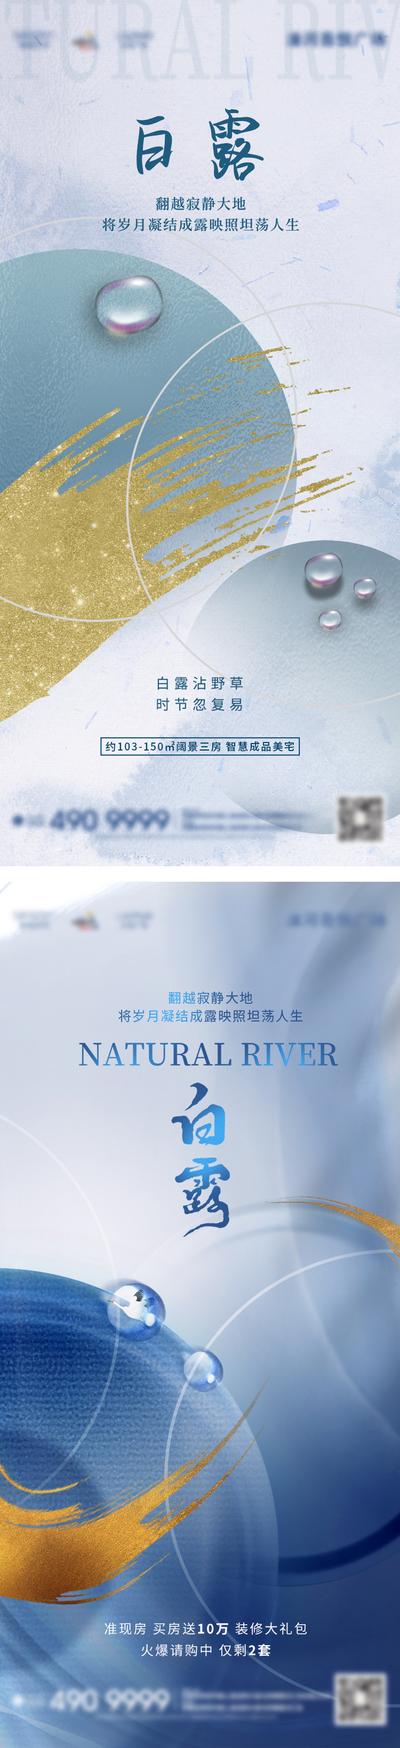 【南门网】广告 海报 地产 白露 节气 系列 品质 高端